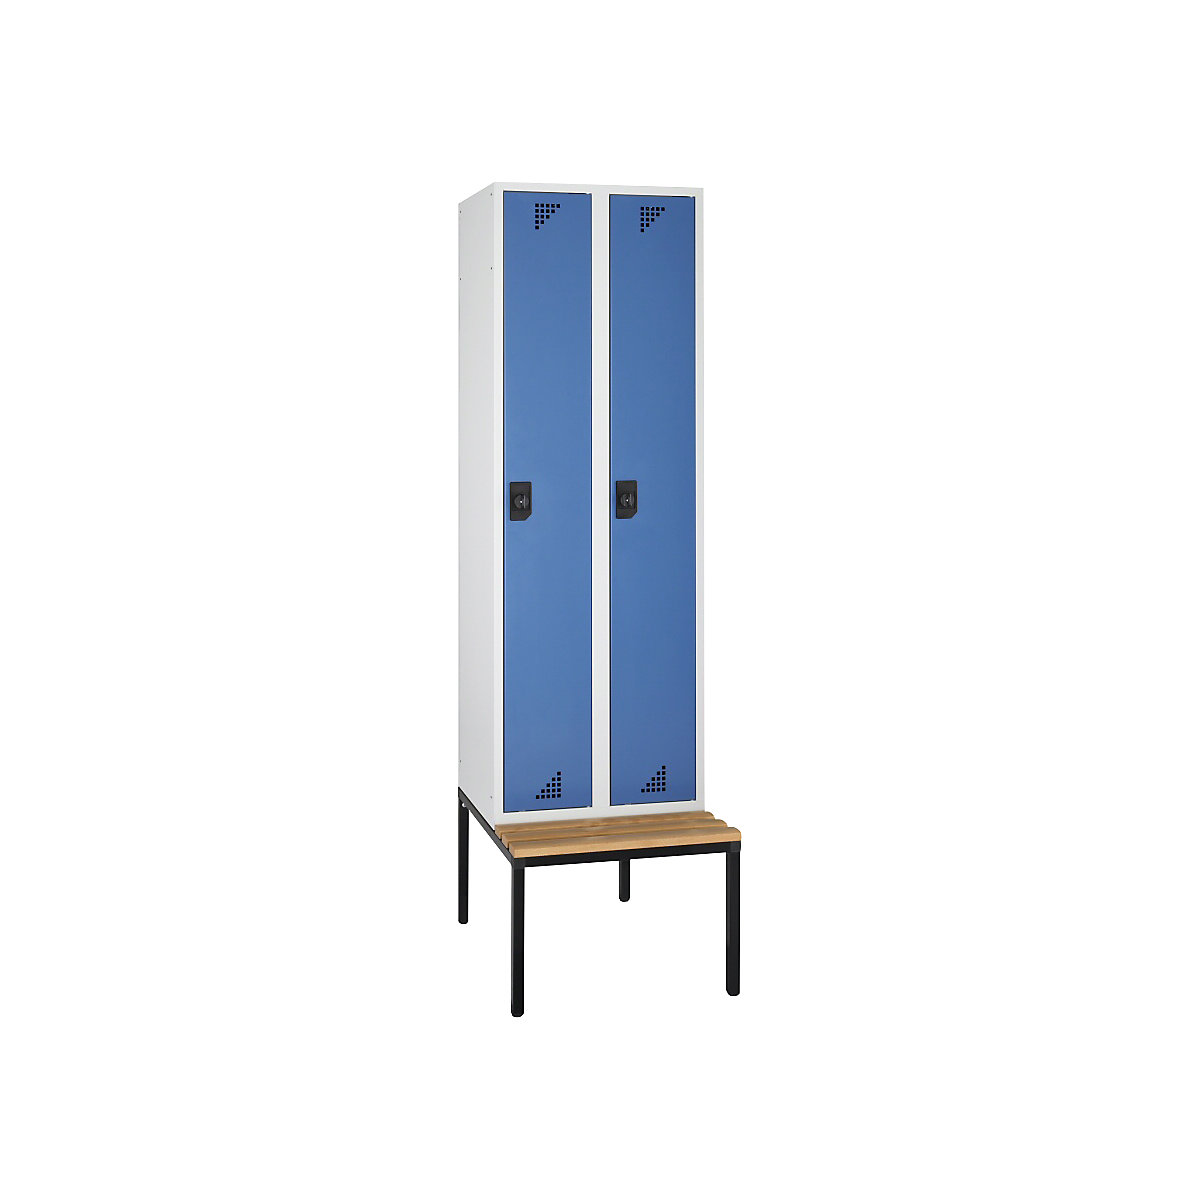 Višenamjenski i garderobni ormar – eurokraft pro, s klupom za sjedenje, 2 pretinca, širina 600 mm, vrata u briljant plavoj boji-6